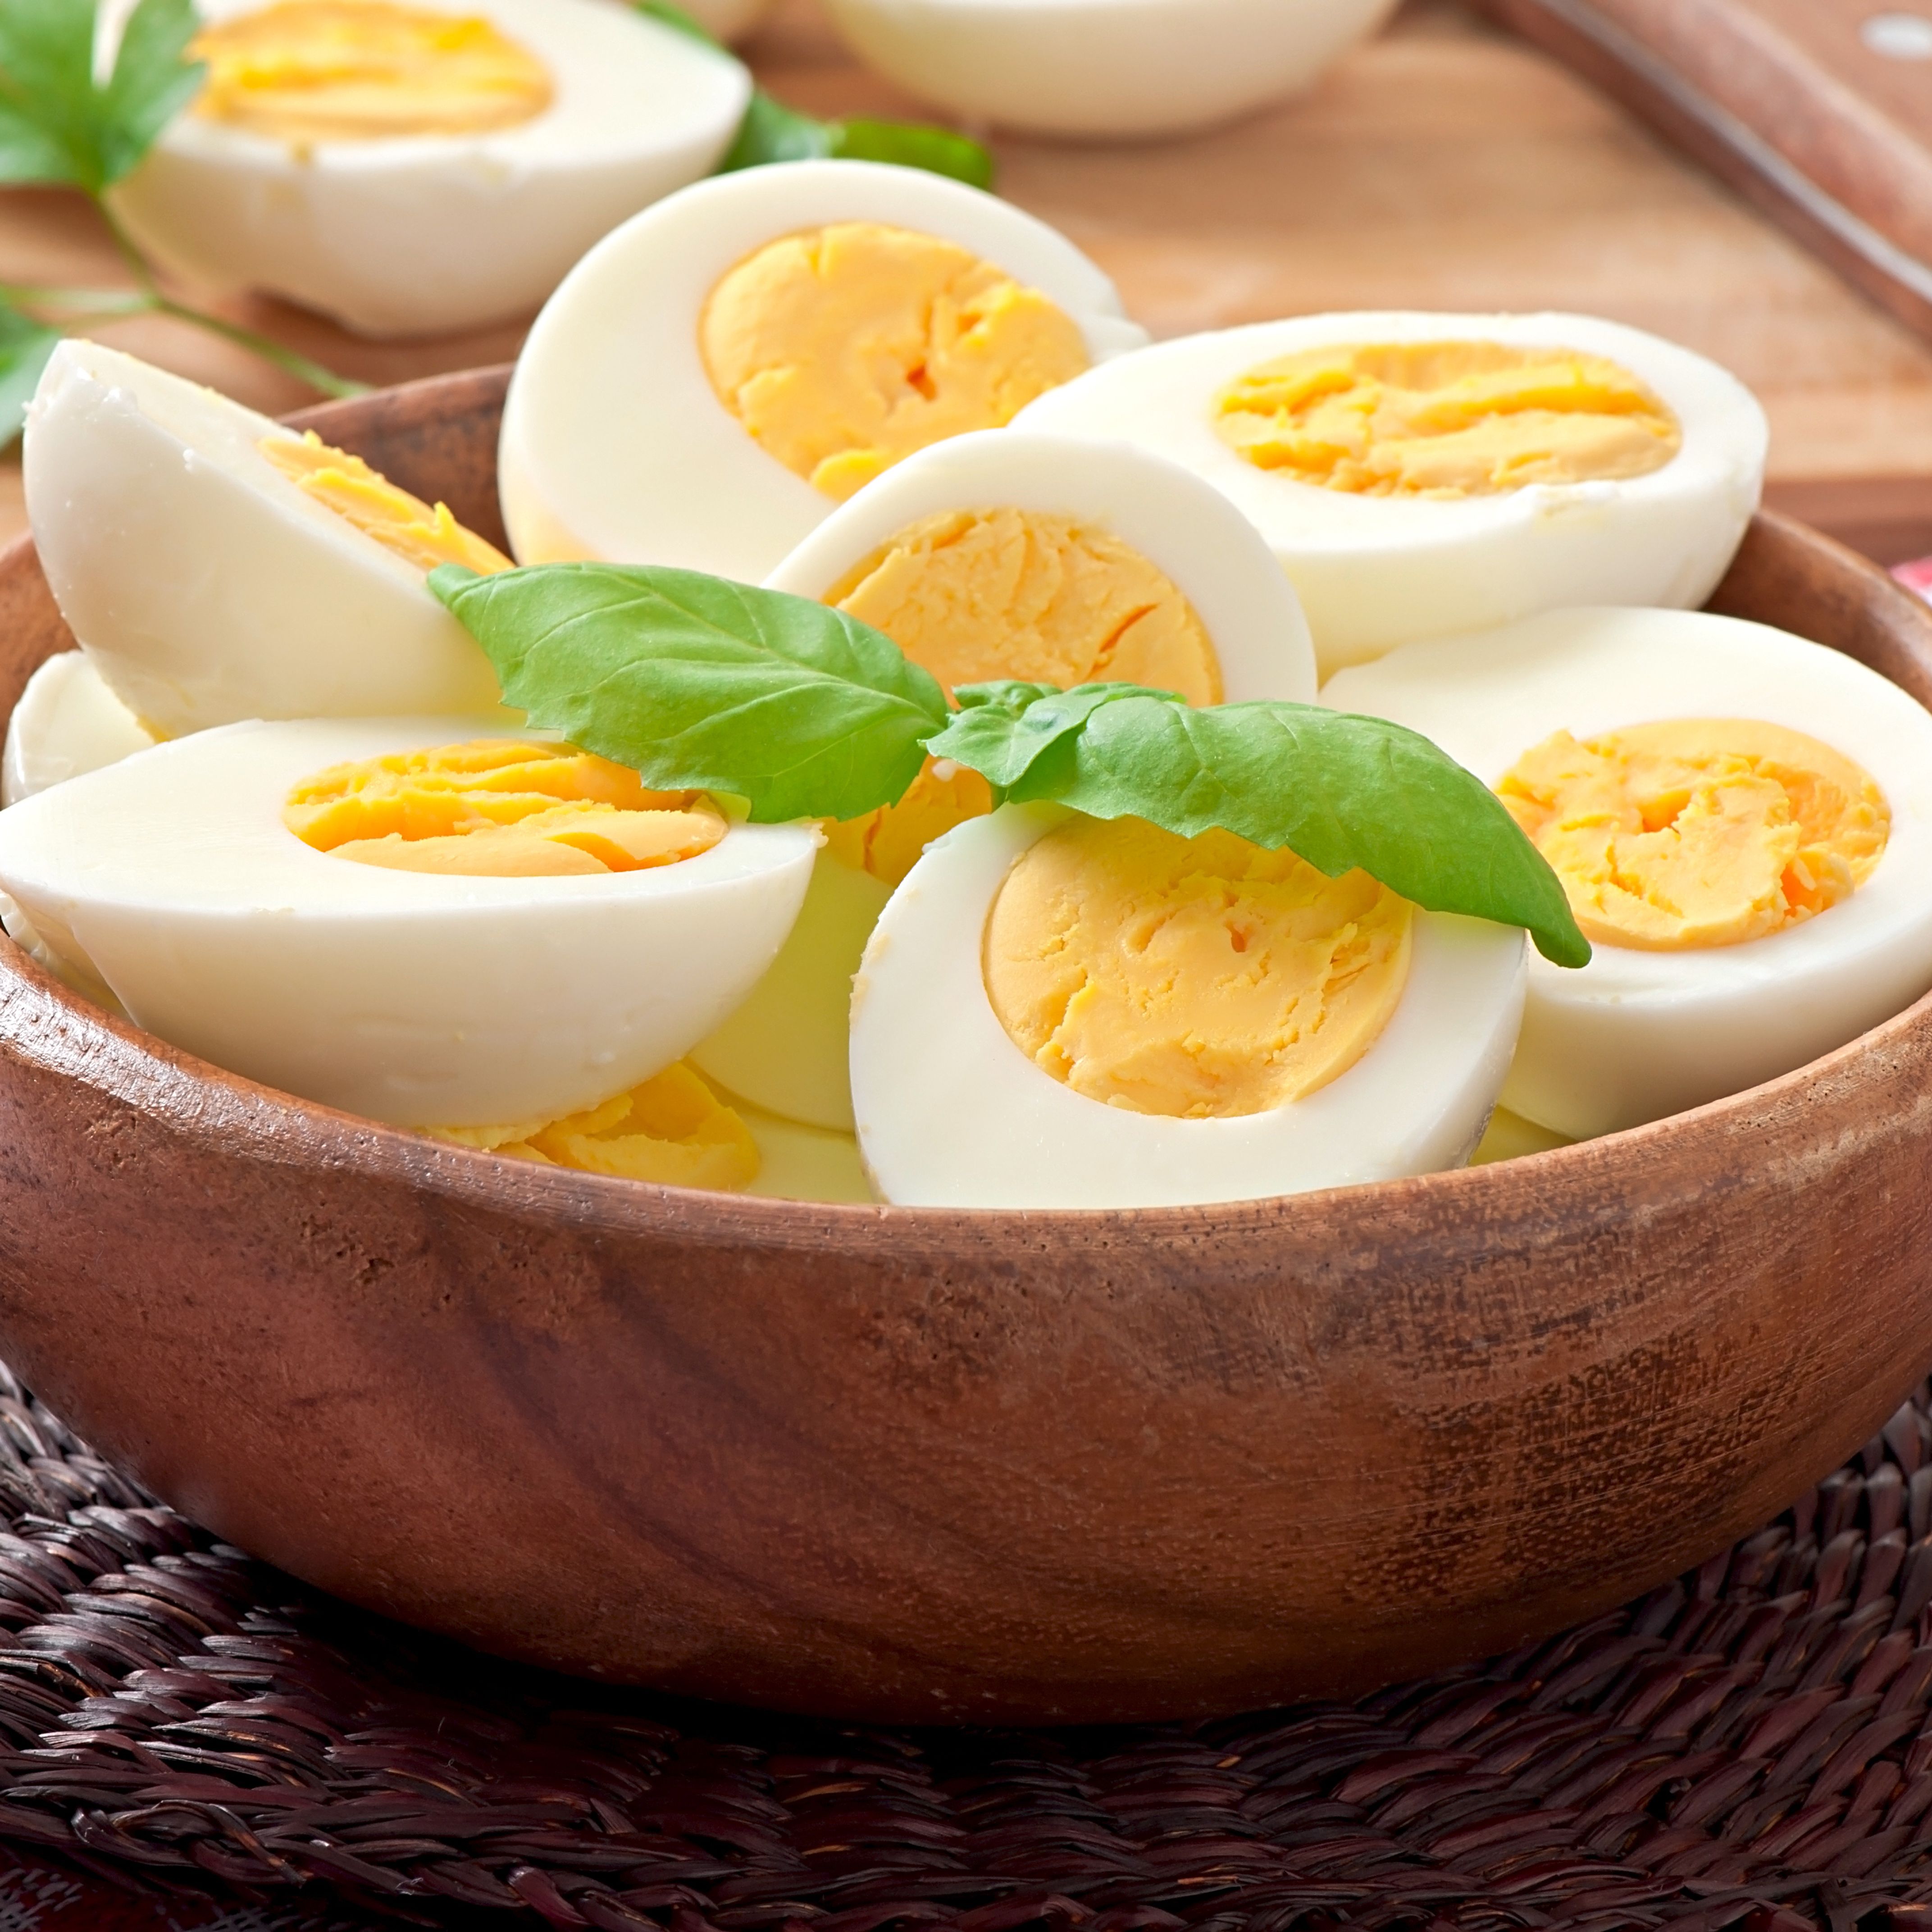 Blanc d'œuf : tout savoir sur les bienfaits du blanc d'œuf